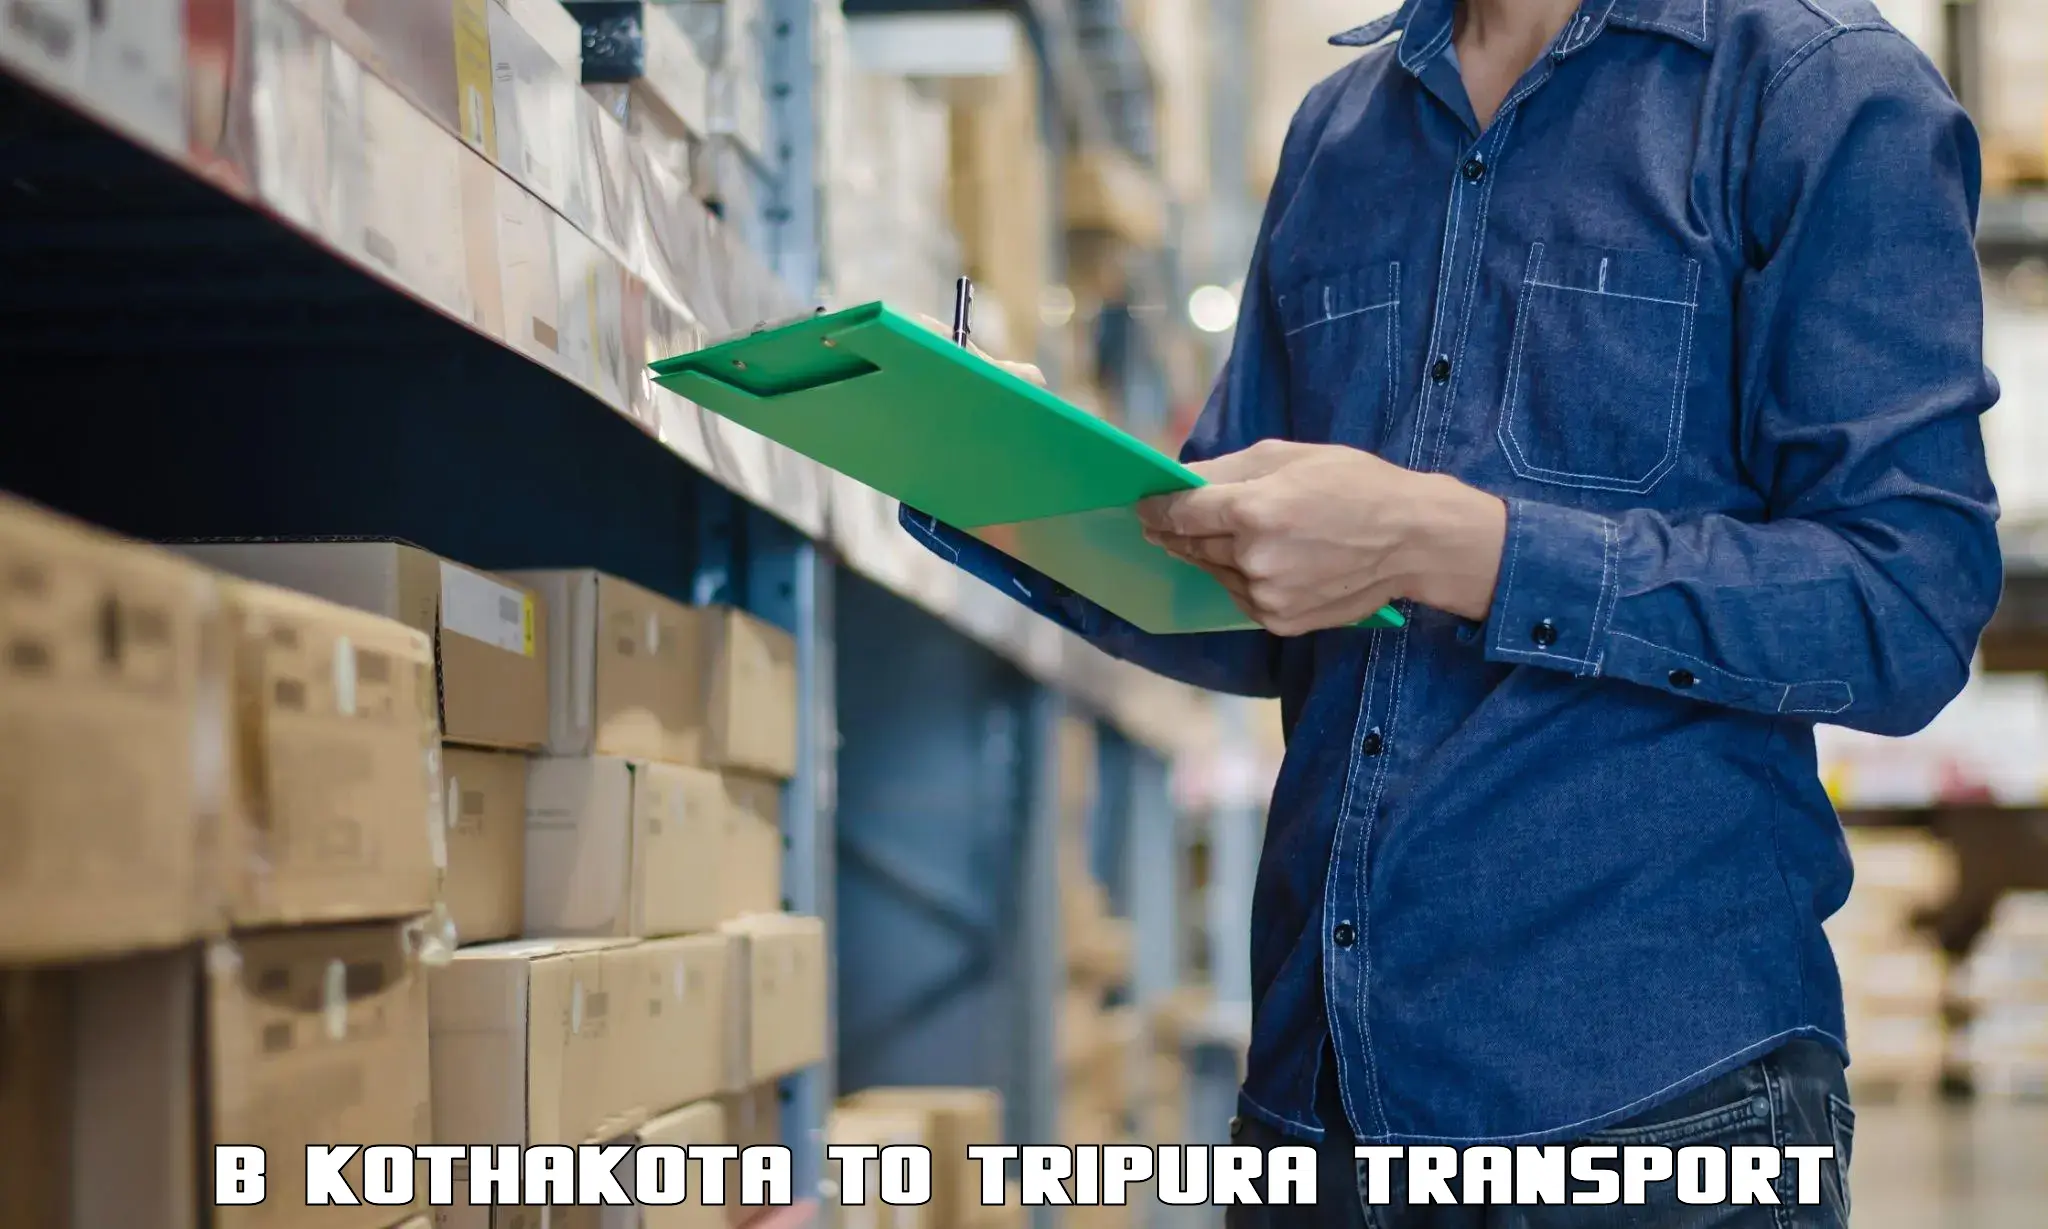 Part load transport service in India B Kothakota to Khowai